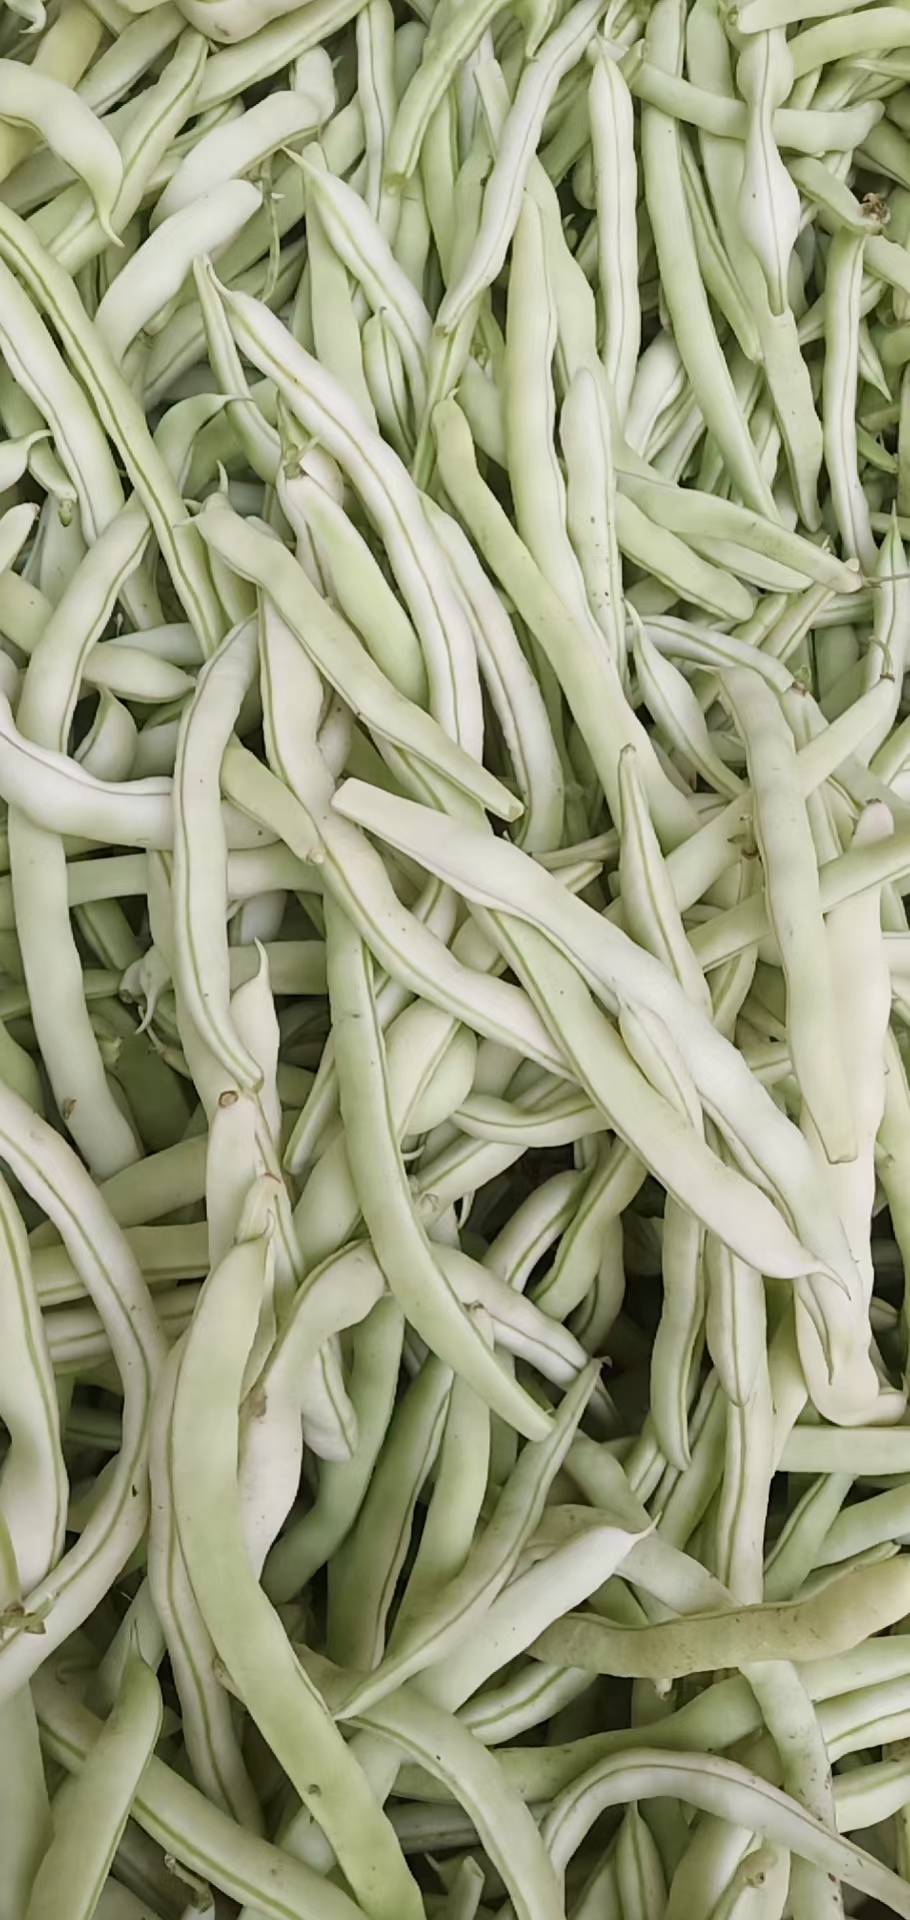 城固县精品白不老四季豆大量上市。质量好。便宜不贵，货量充足